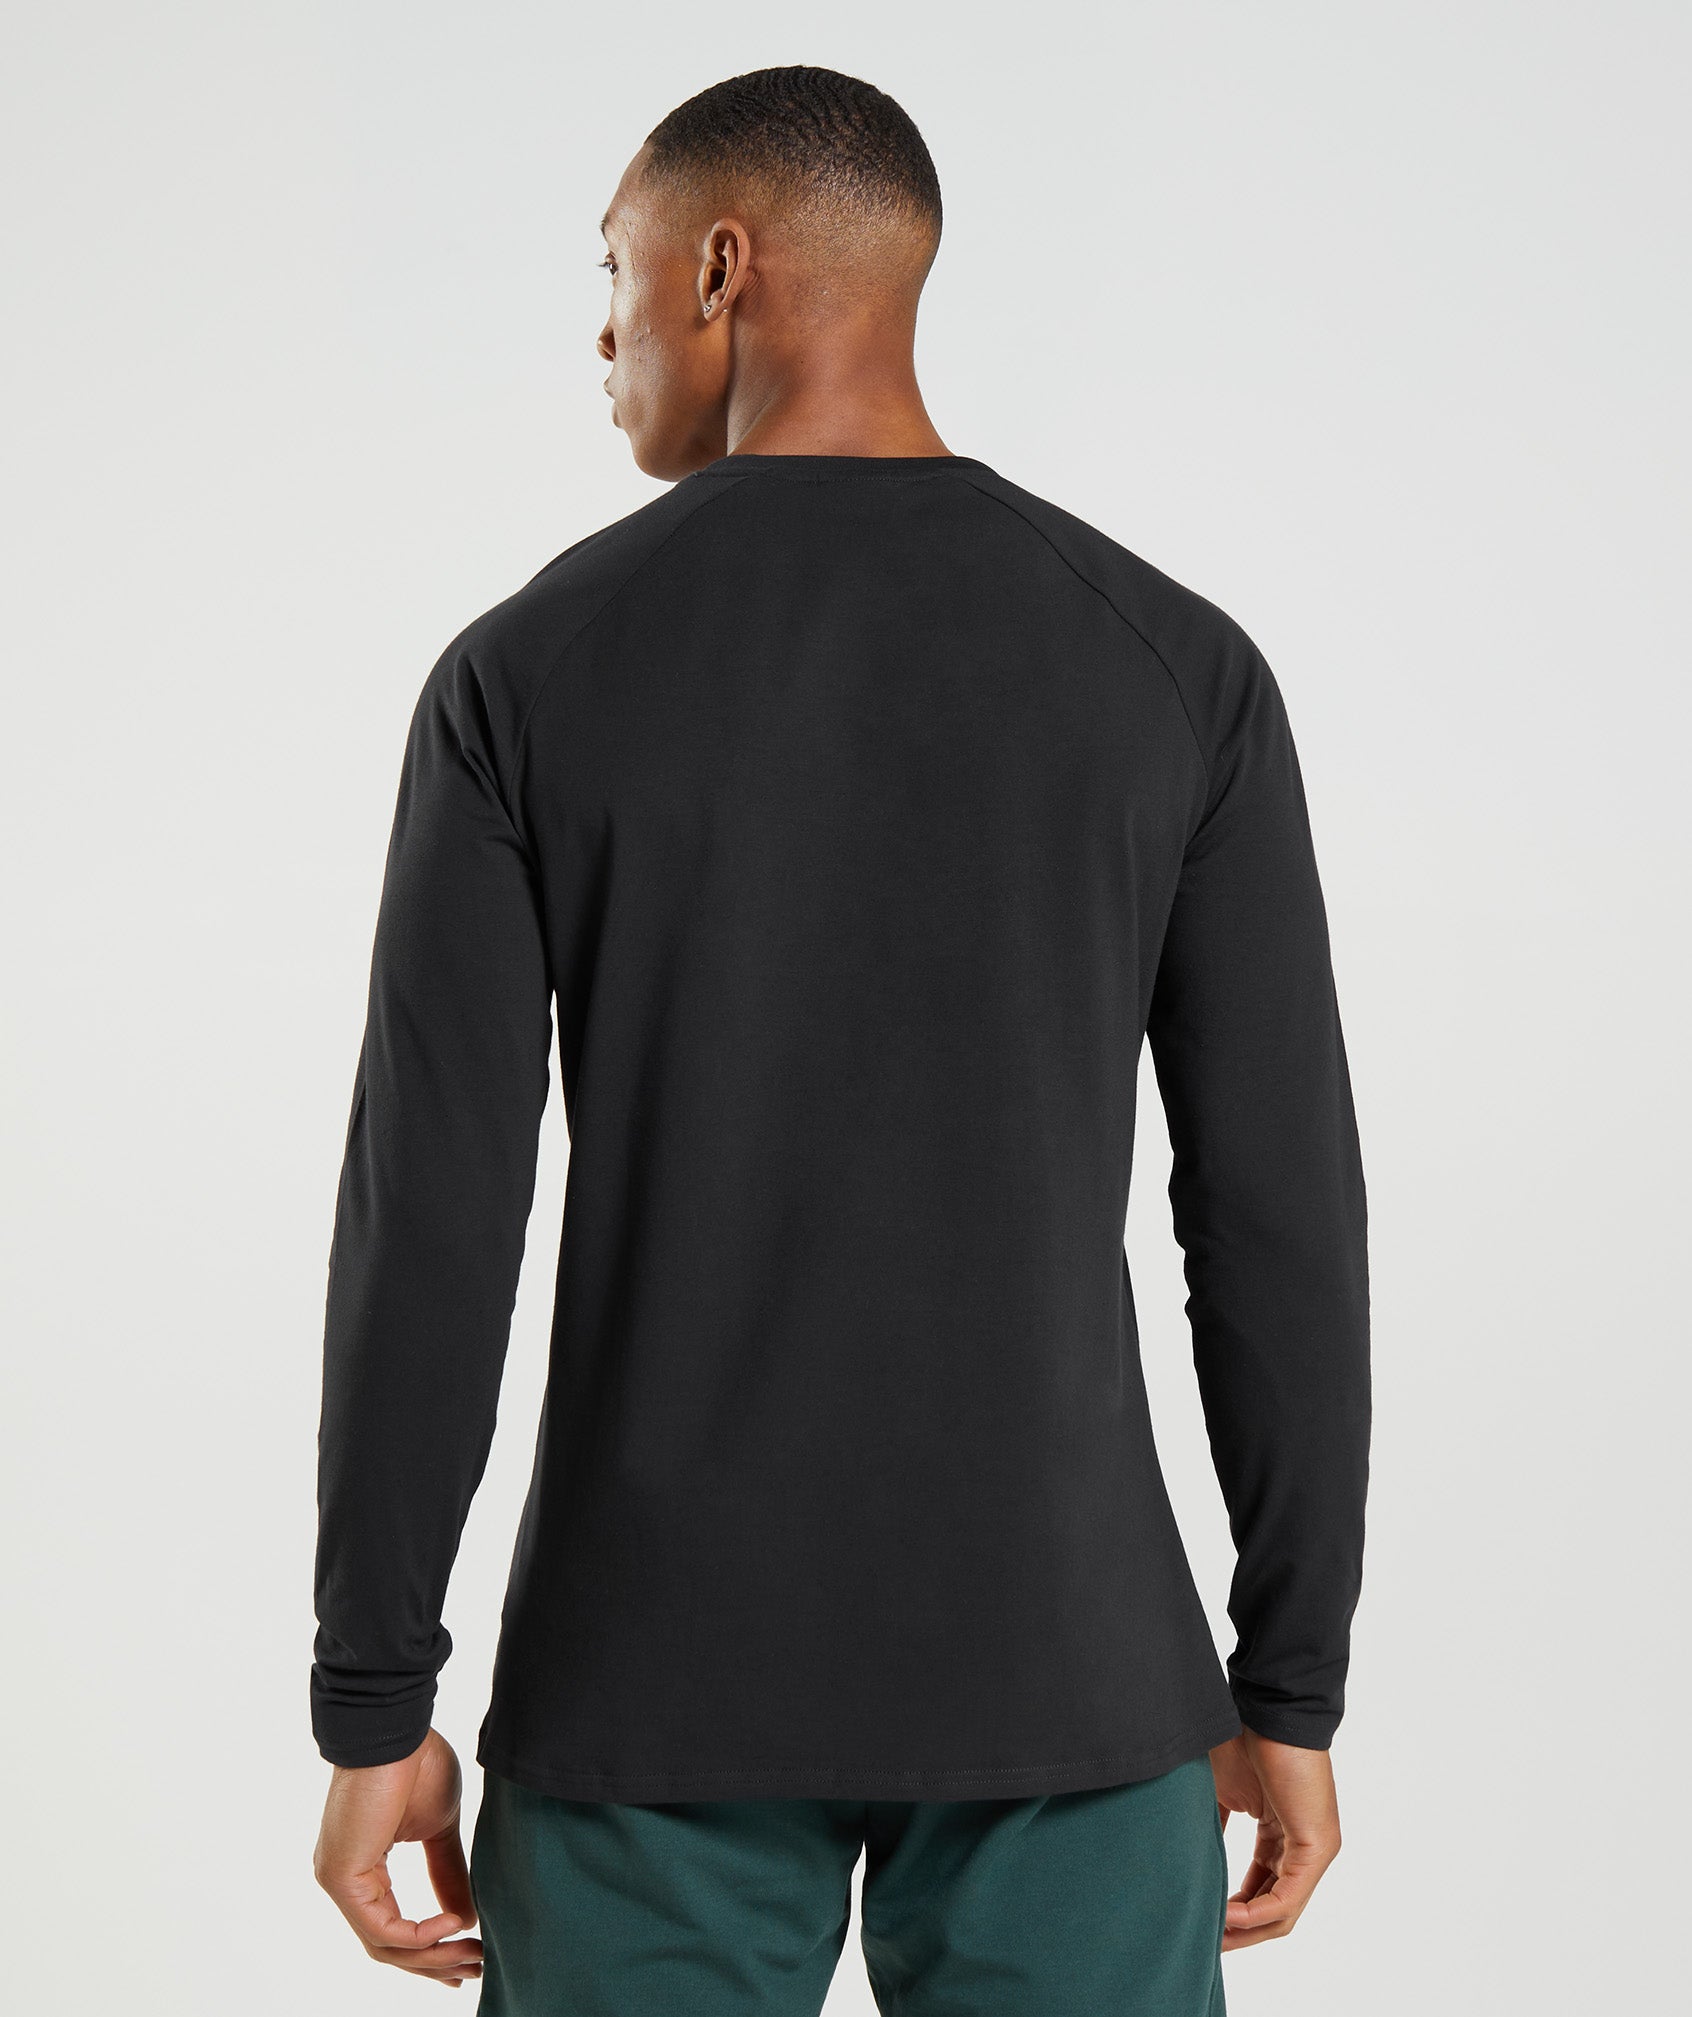 Apollo Camo Long Sleeve T-Shirt in Black